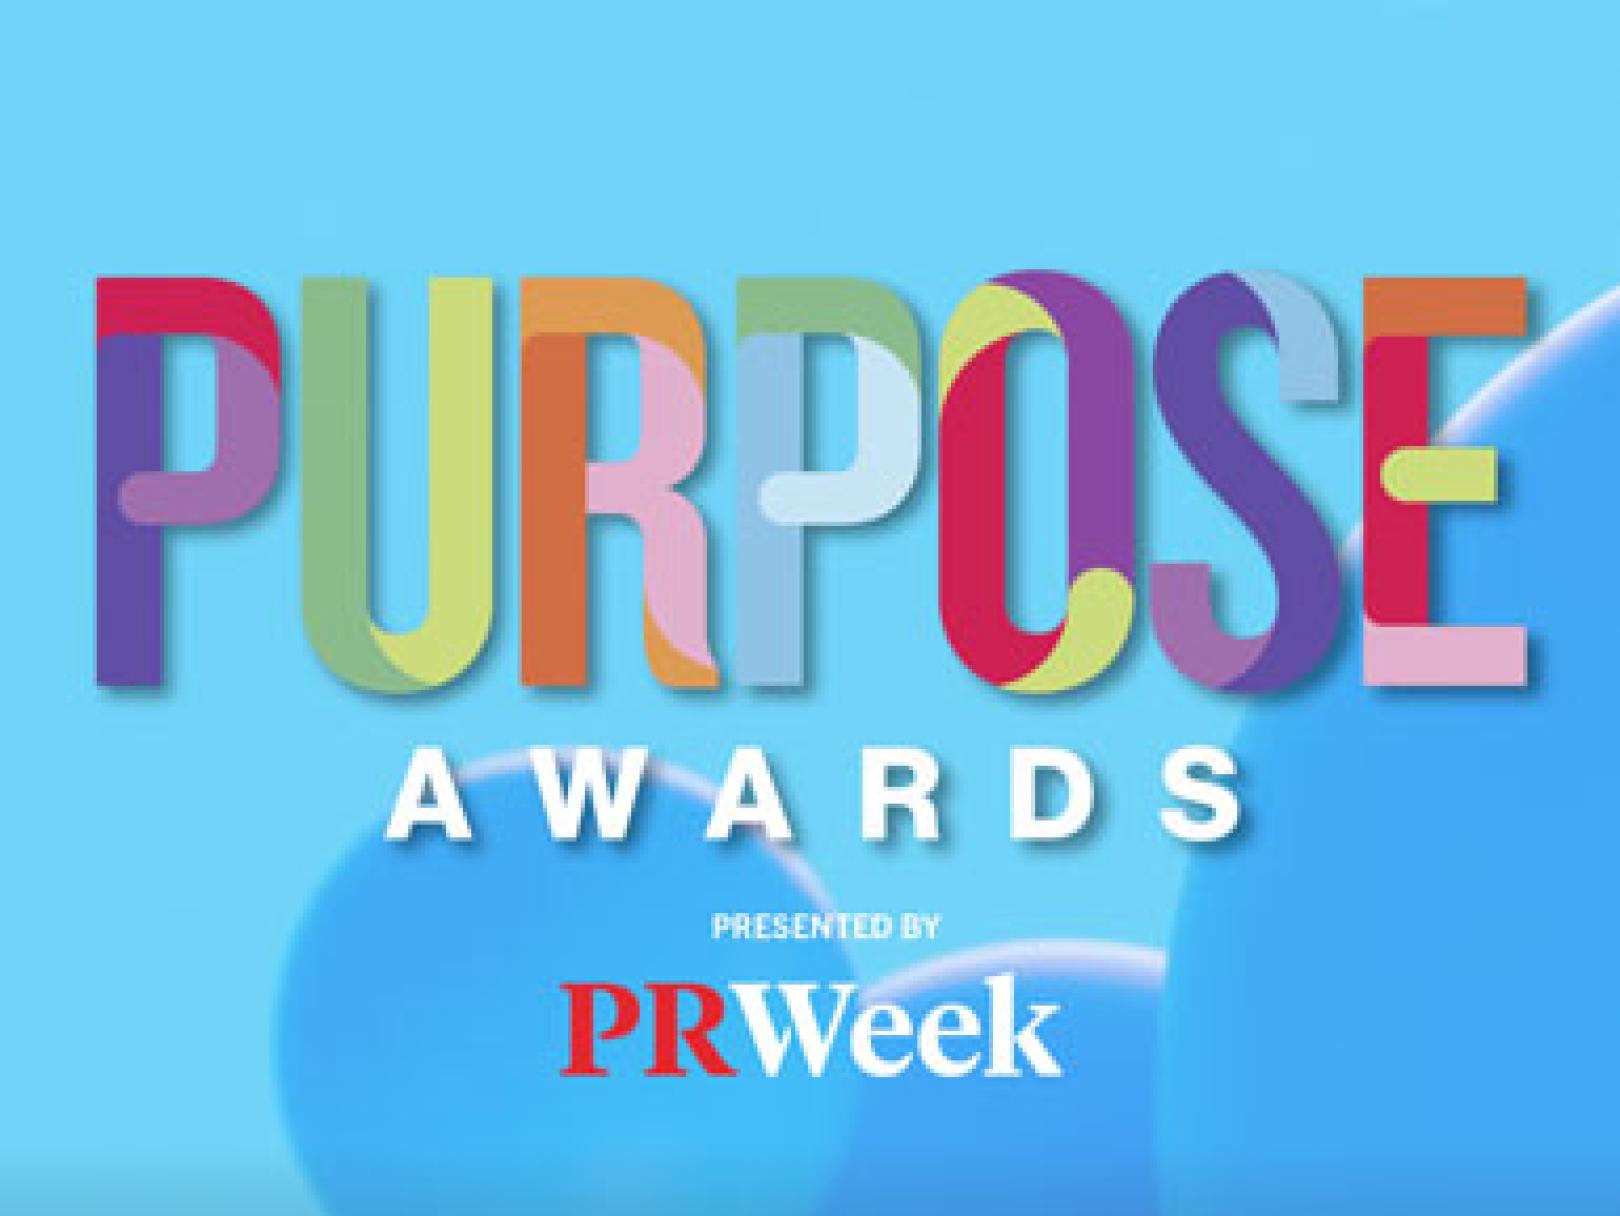 PR Week Purpose Awards 